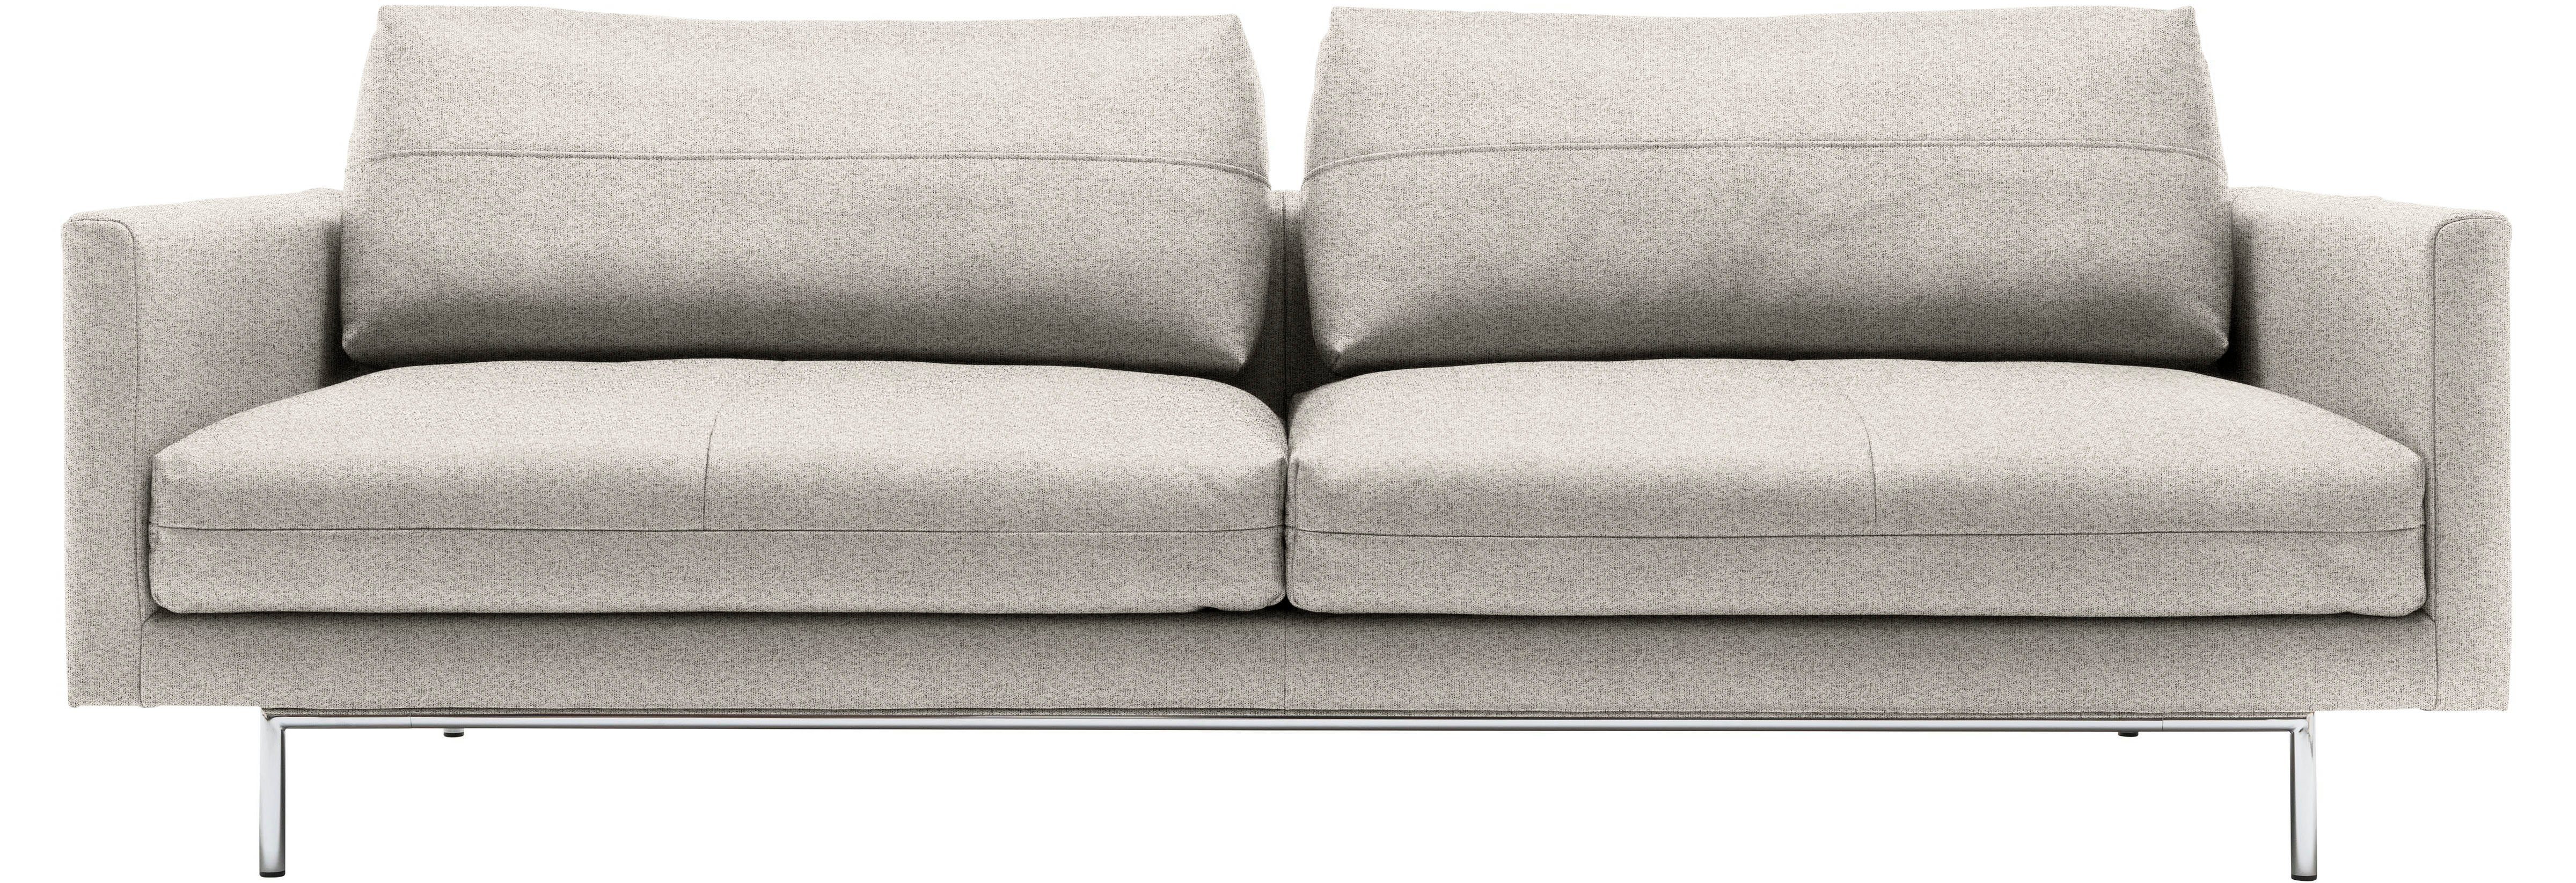 hülsta sofa 4-Sitzer seidengrau | seidengrau